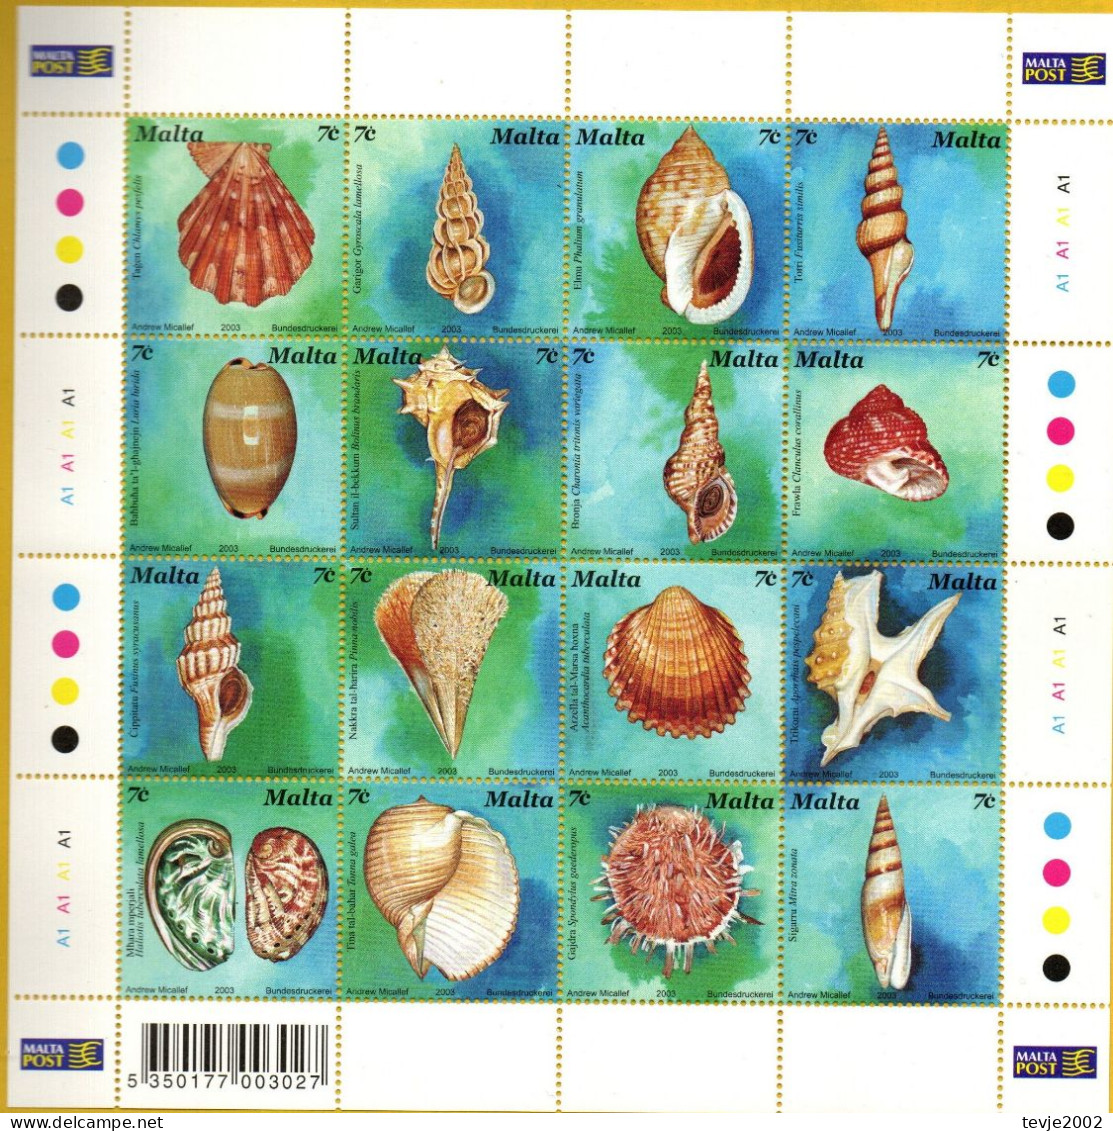 Malta 2003 - Mi.Nr. 1286 - 1301 Kleinbogen - Postfrisch MNH - Tiere Animals Muscheln Shellfish - Muscheln